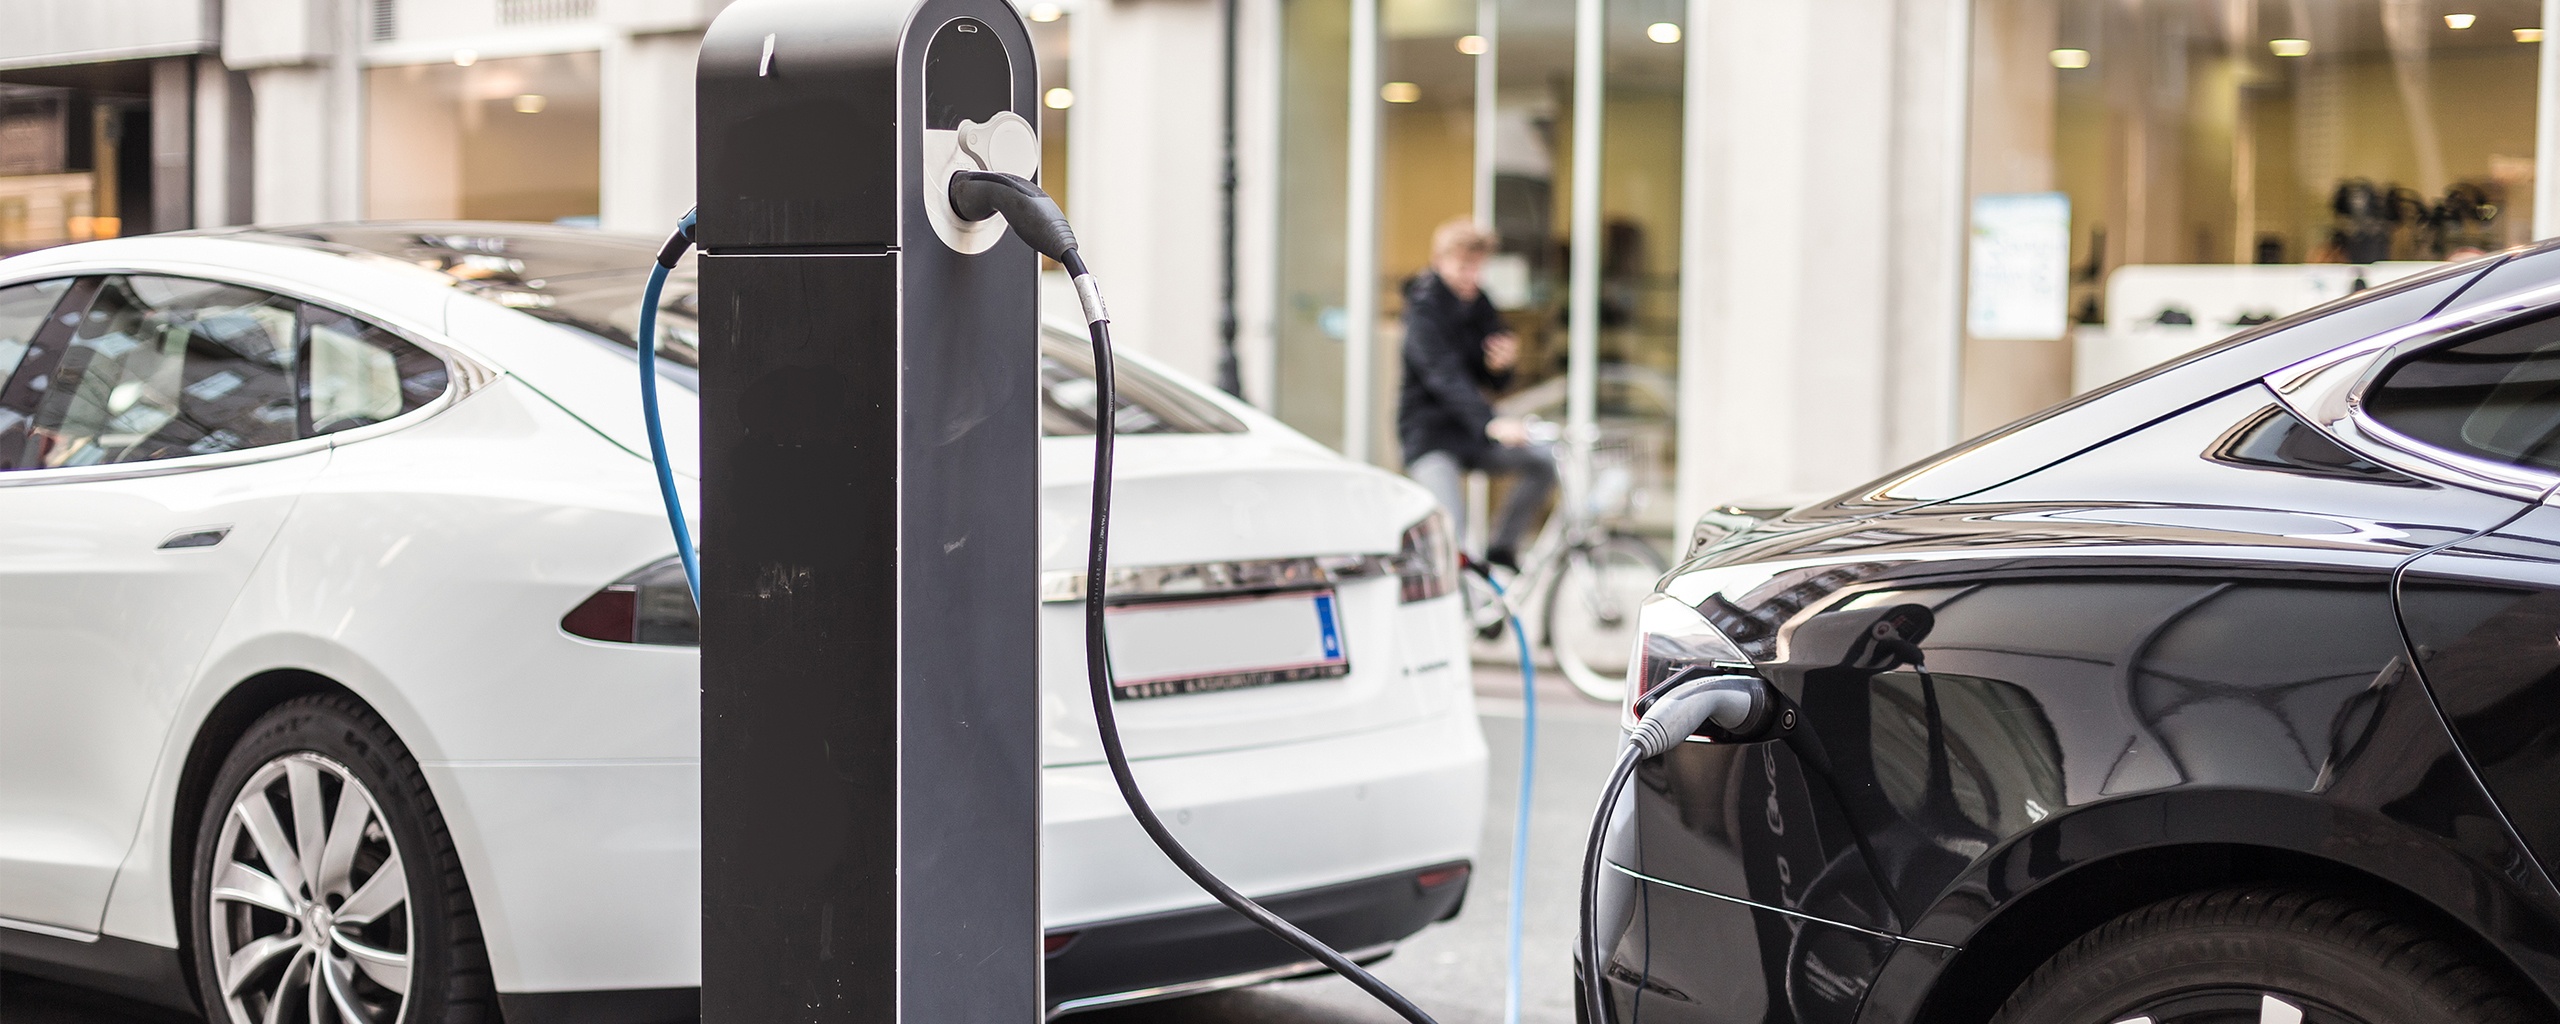 Un nouveau standard pour la recharge sans fil des voitures